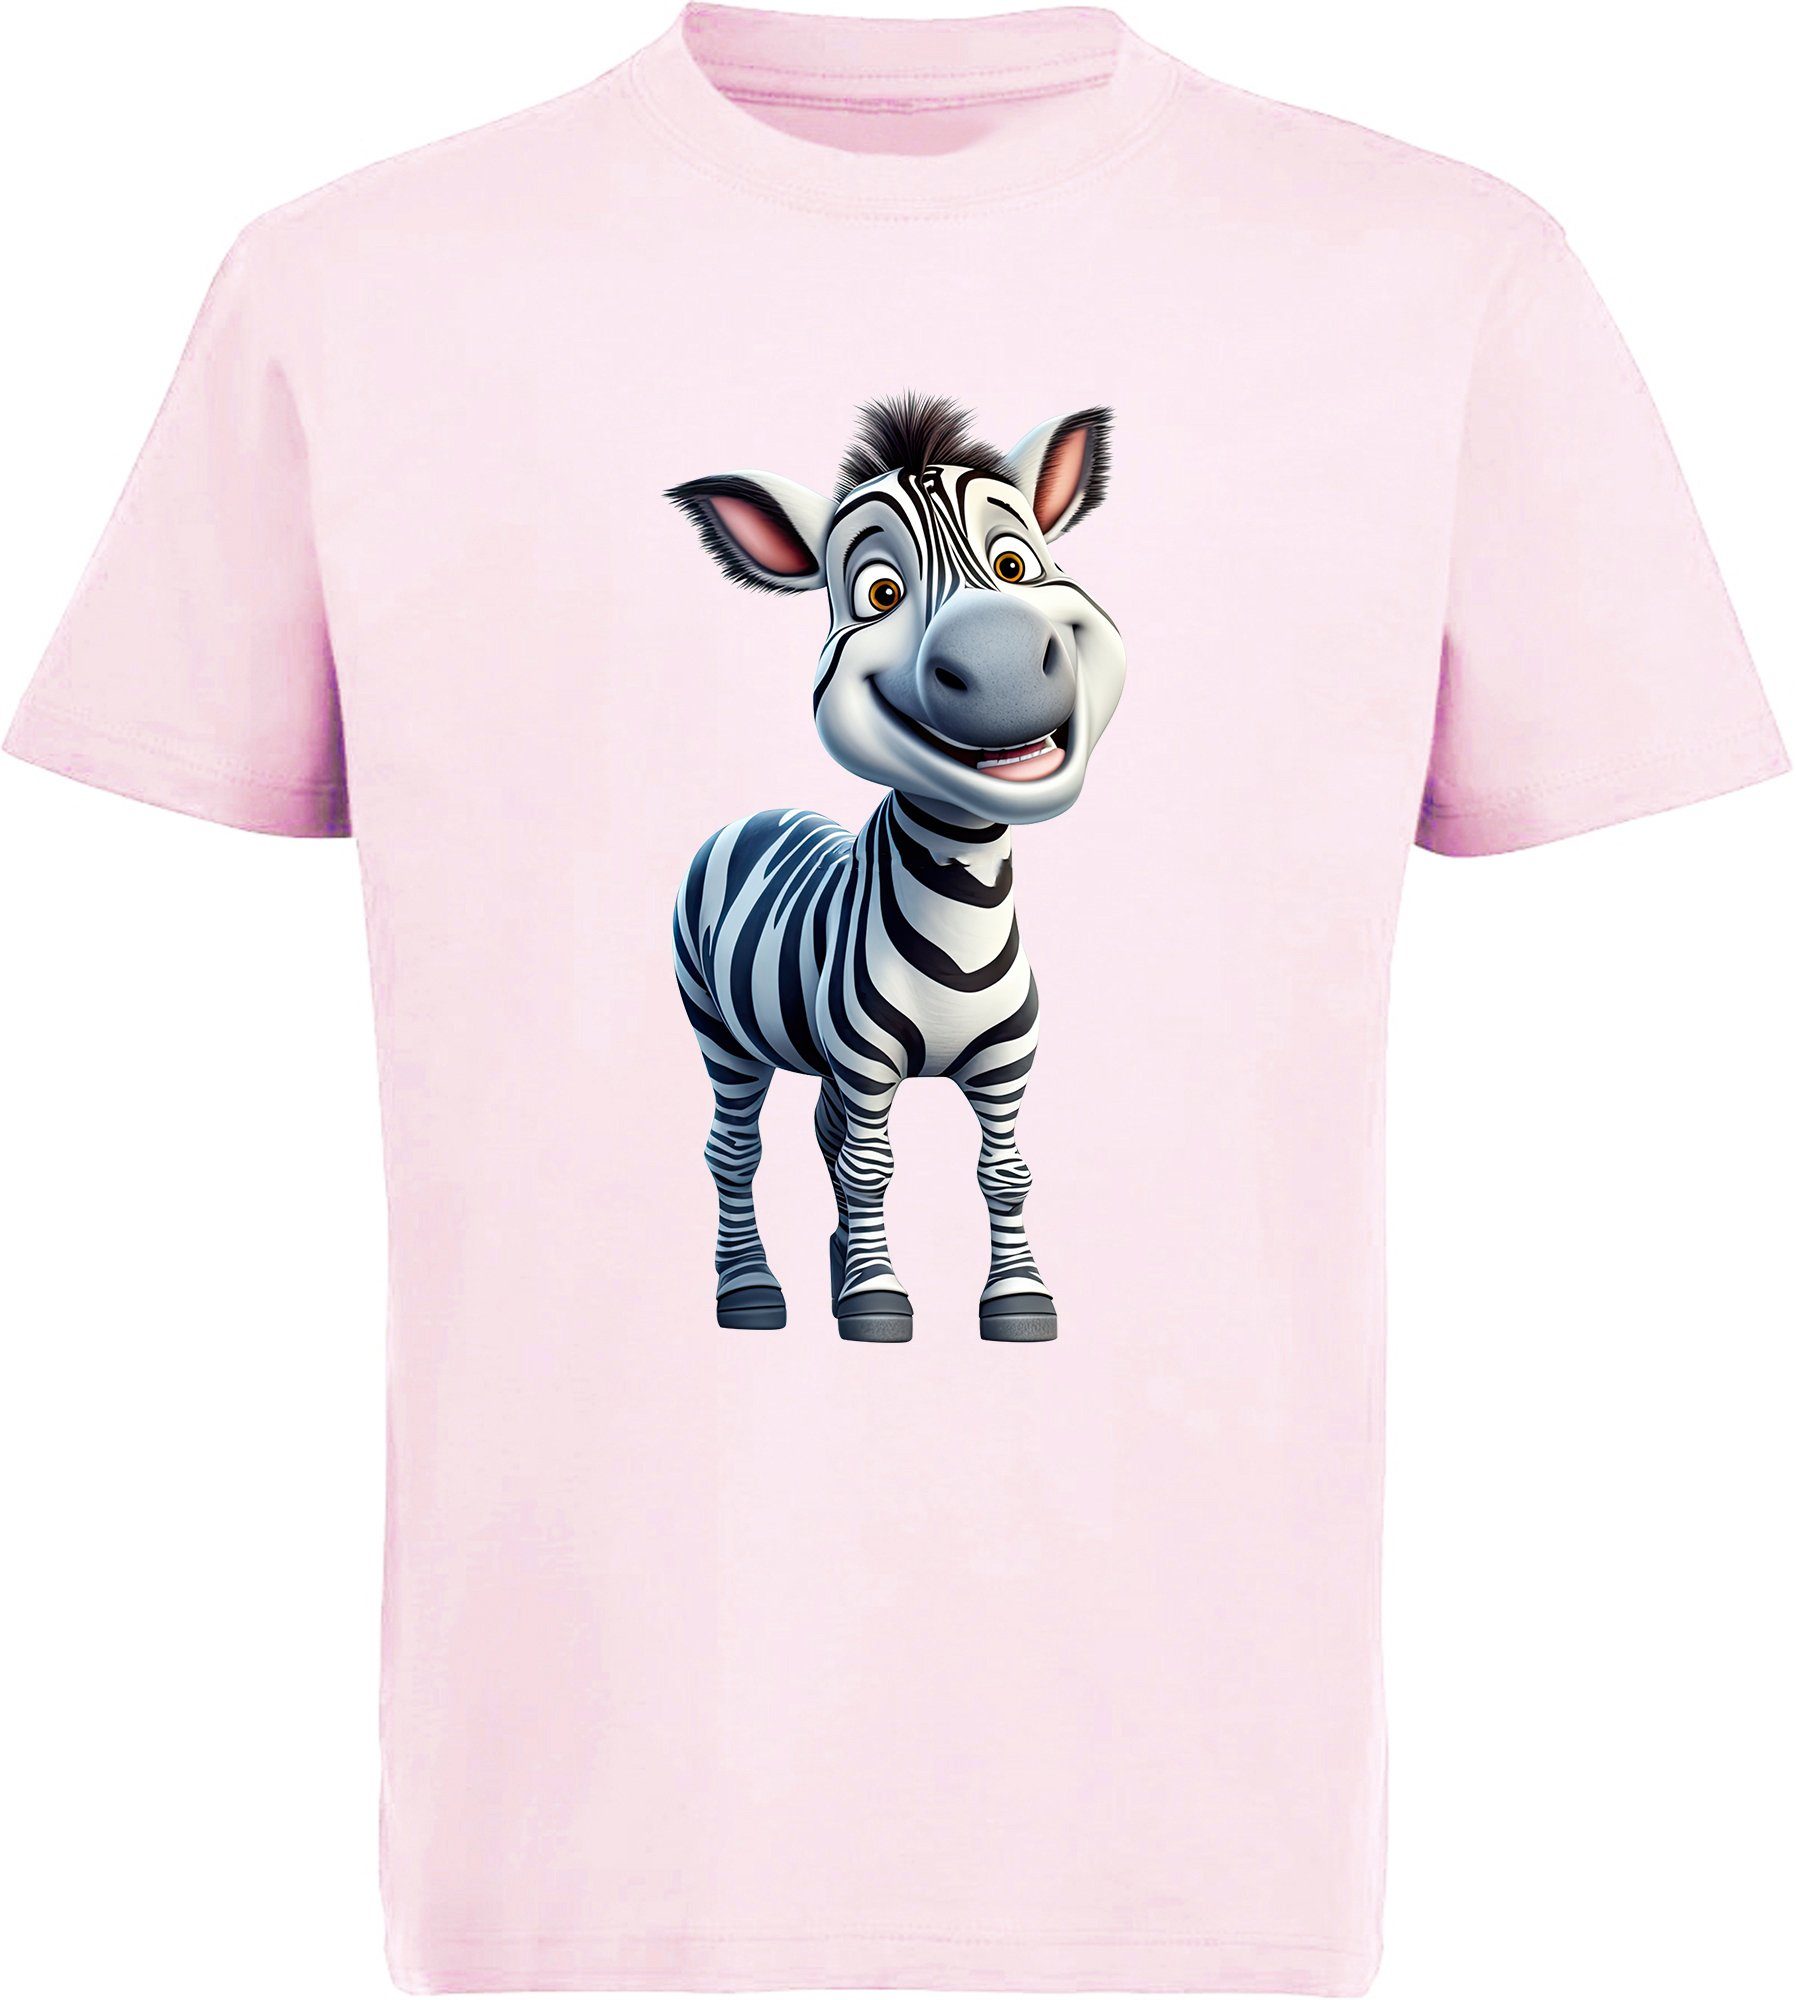 MyDesign24 T-Shirt Kinder Wildtier Print Shirt bedruckt - Baby Zebra Baumwollshirt mit Aufdruck, i280 rosa